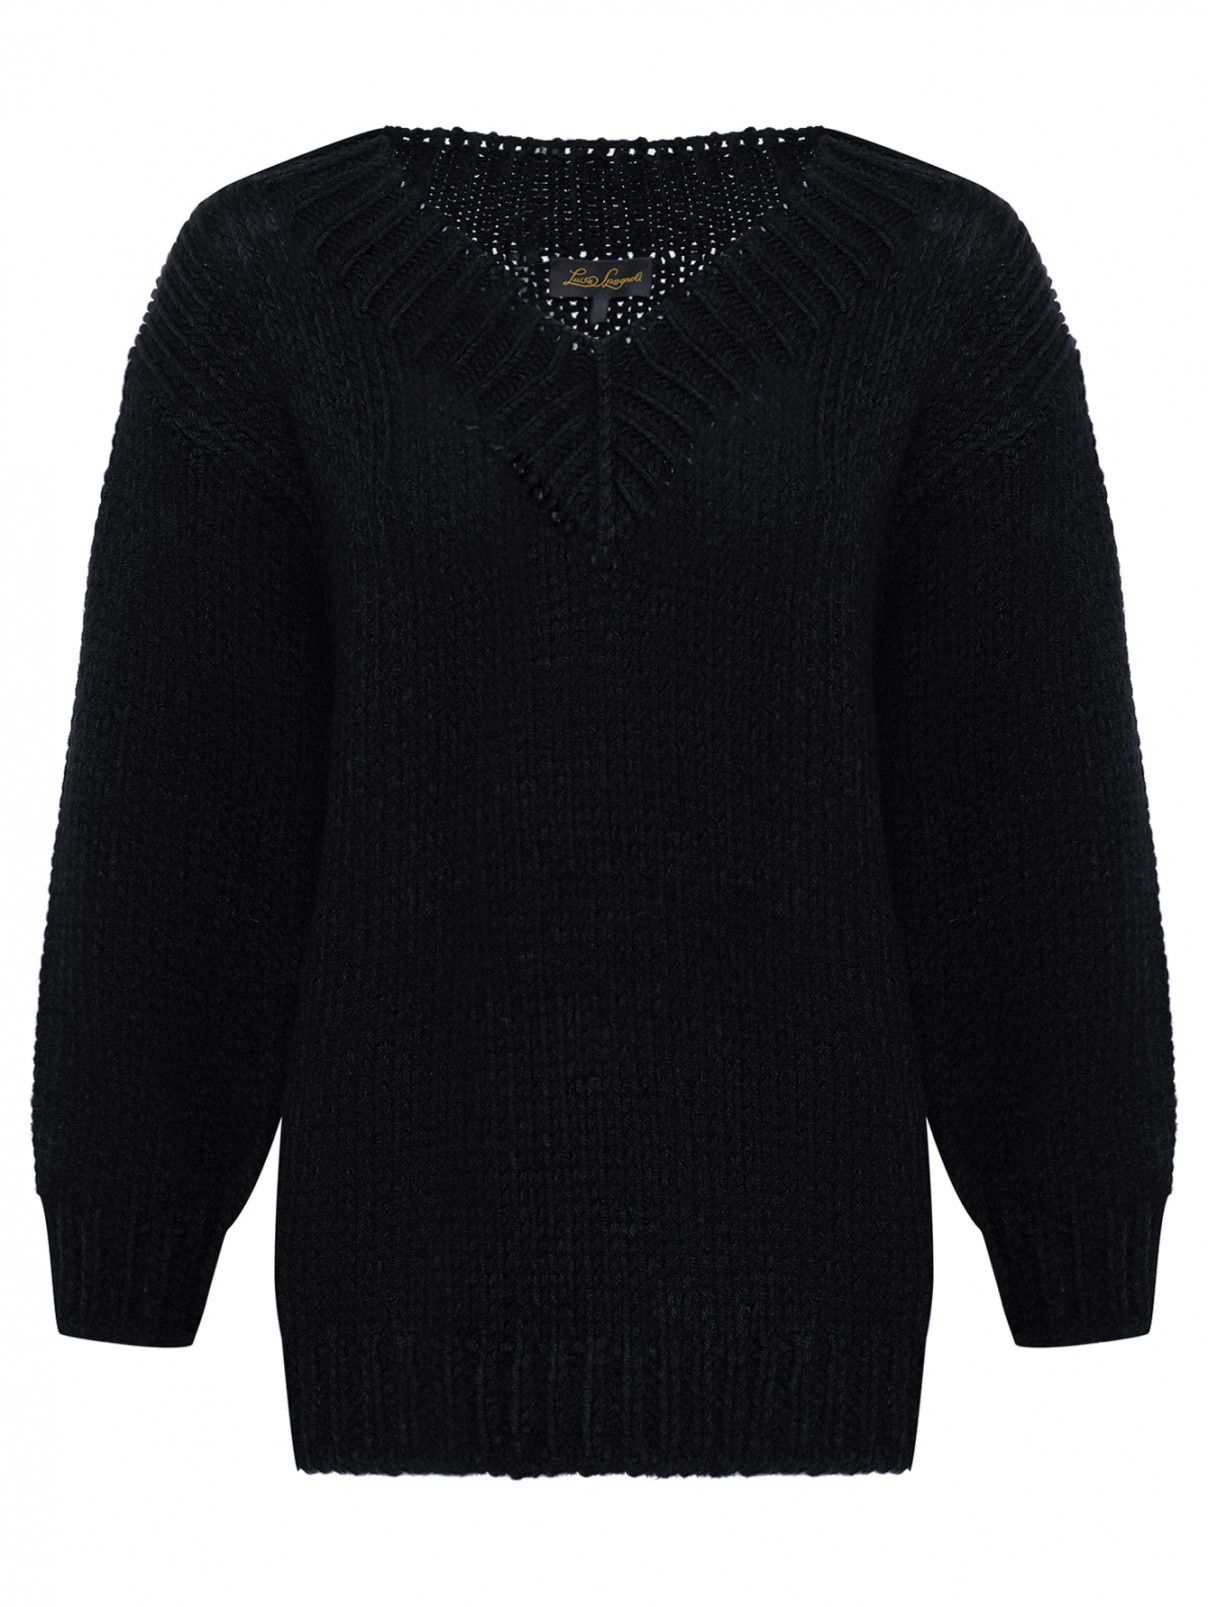 Пуловер из шерсти свободного кроя Luisa Spagnoli  –  Общий вид  – Цвет:  Черный